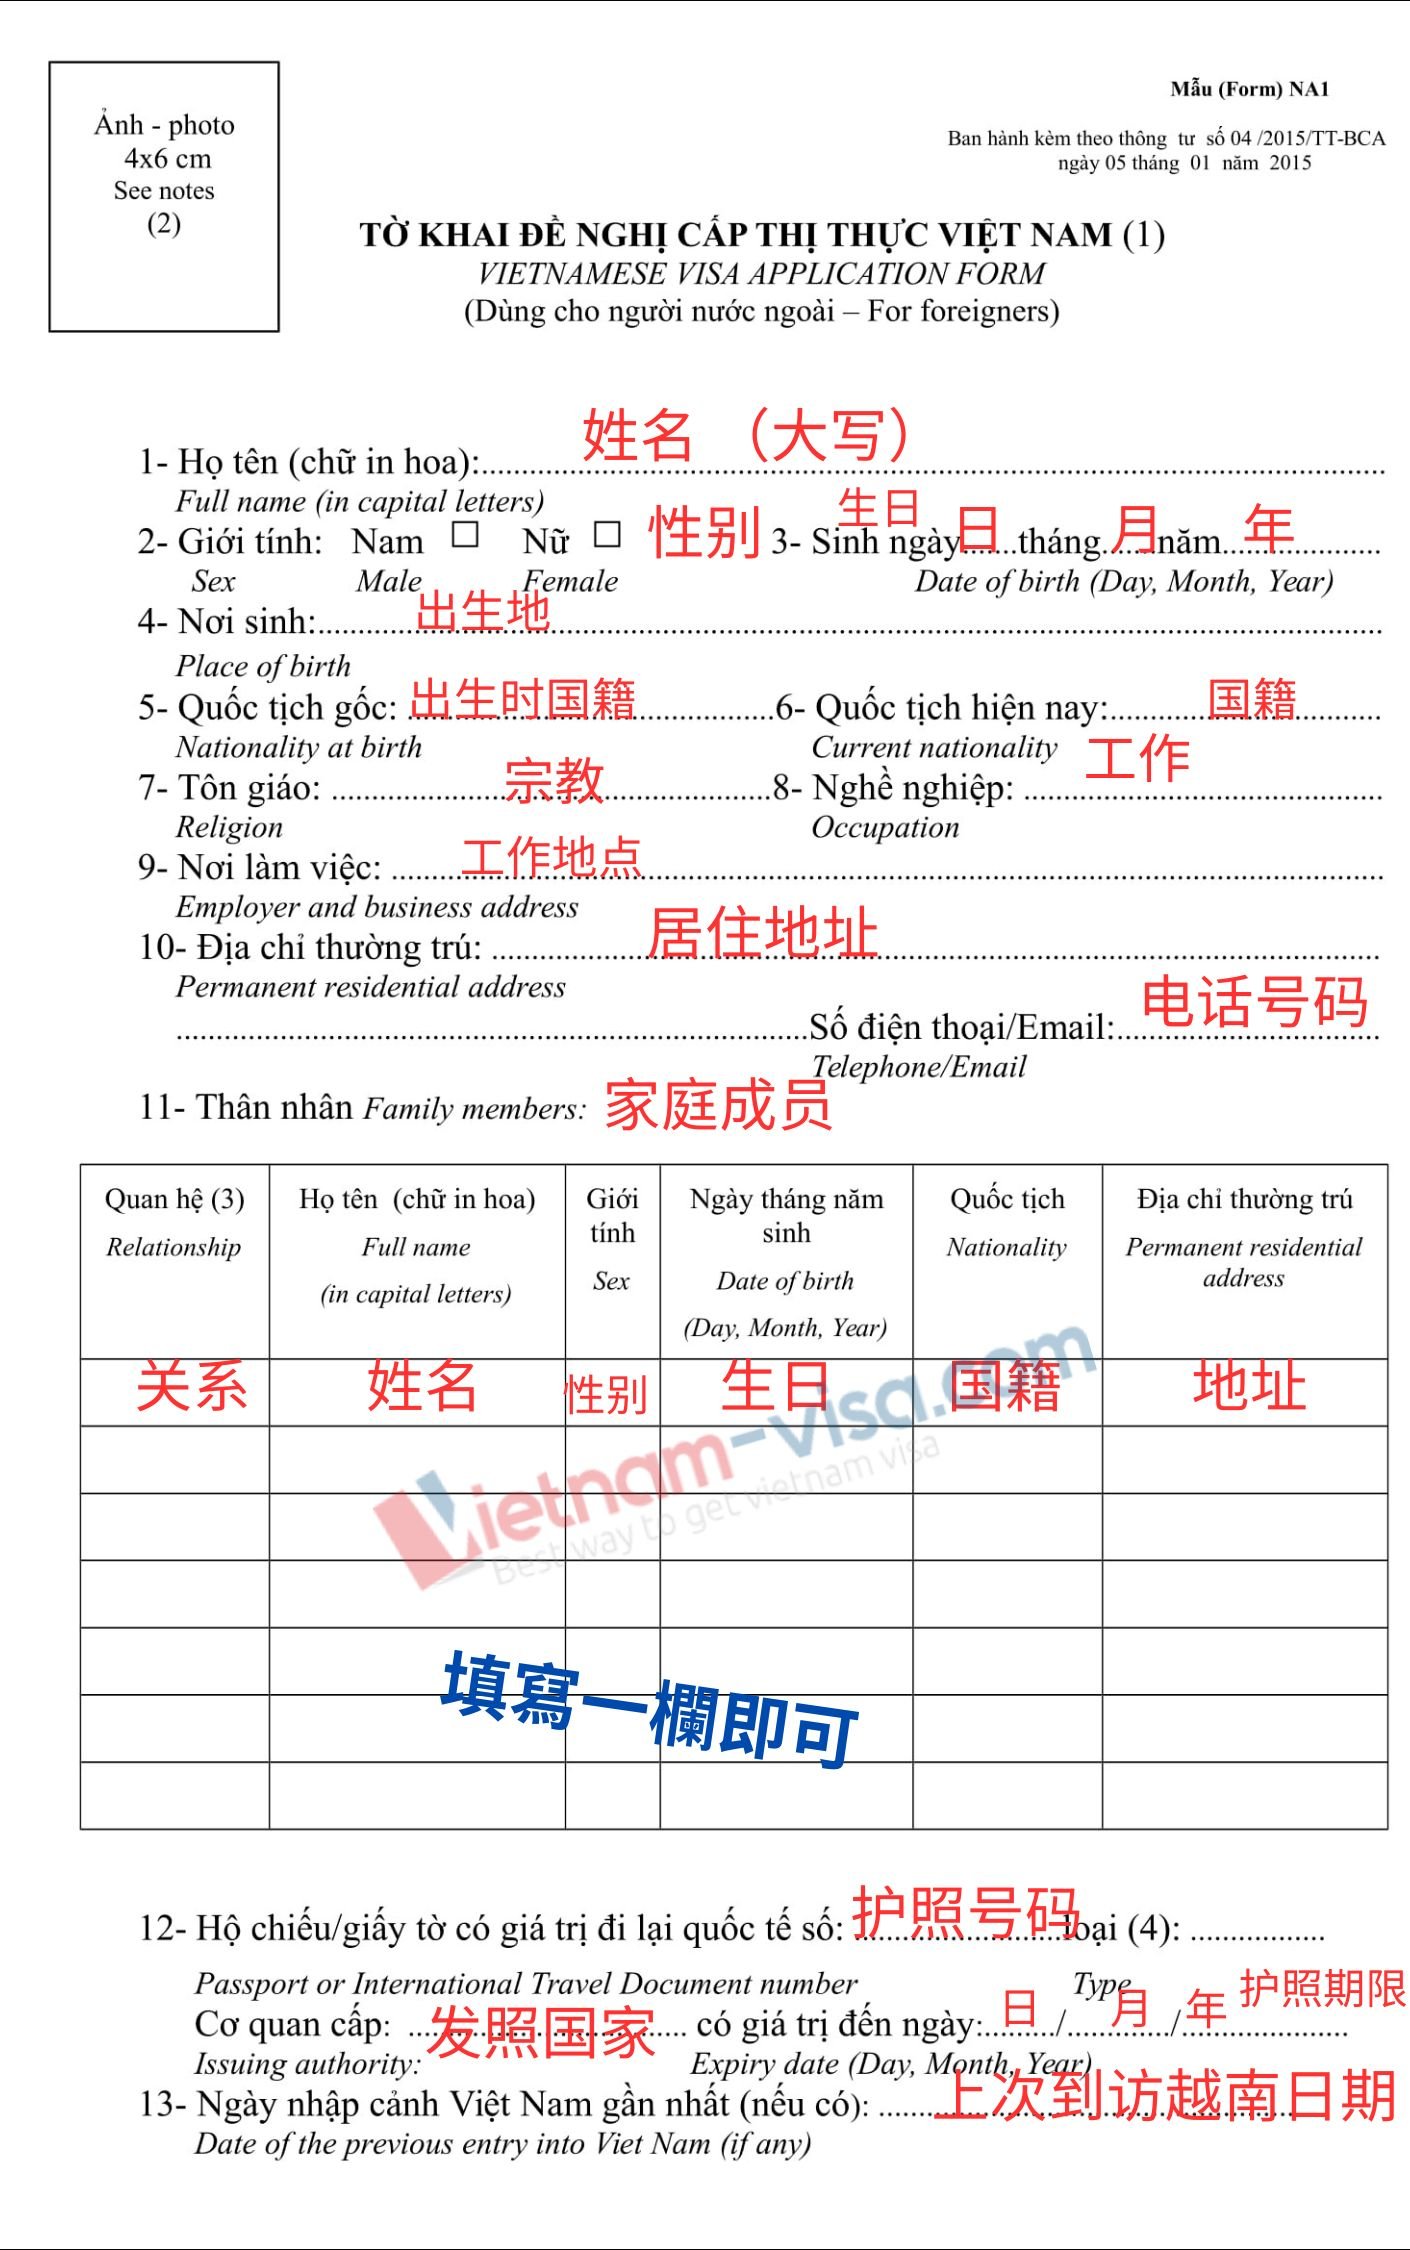 越南入出境申报单 – NA1表格如何填写